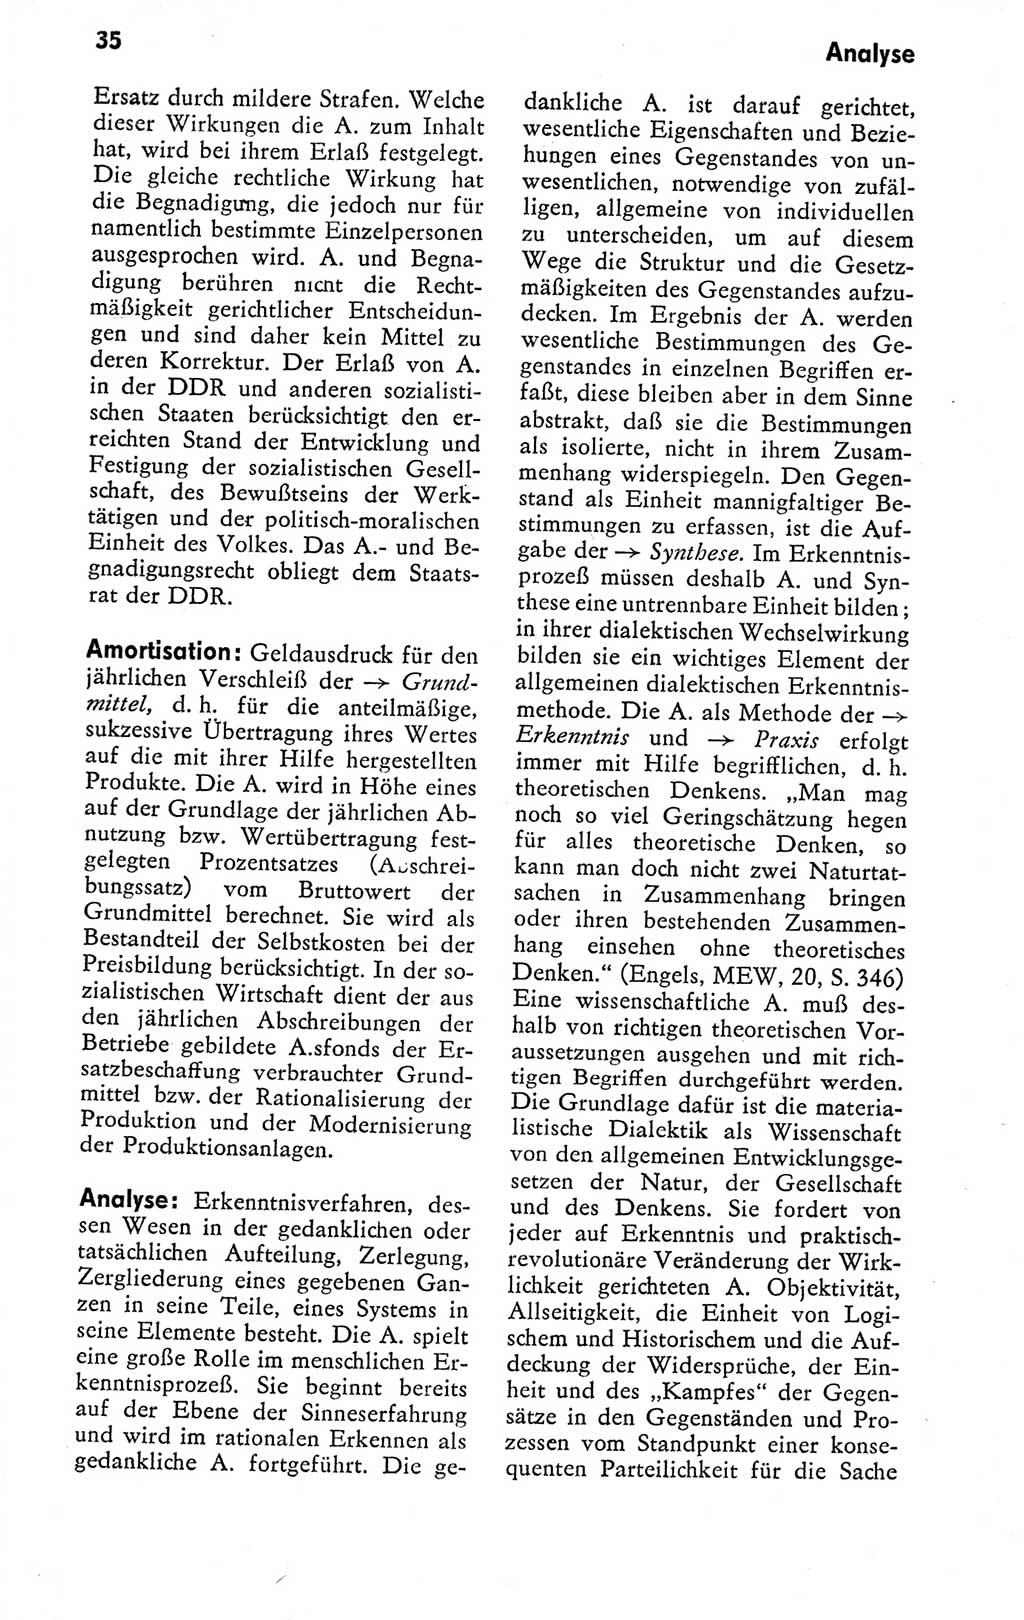 Kleines politisches Wörterbuch [Deutsche Demokratische Republik (DDR)] 1978, Seite 35 (Kl. pol. Wb. DDR 1978, S. 35)